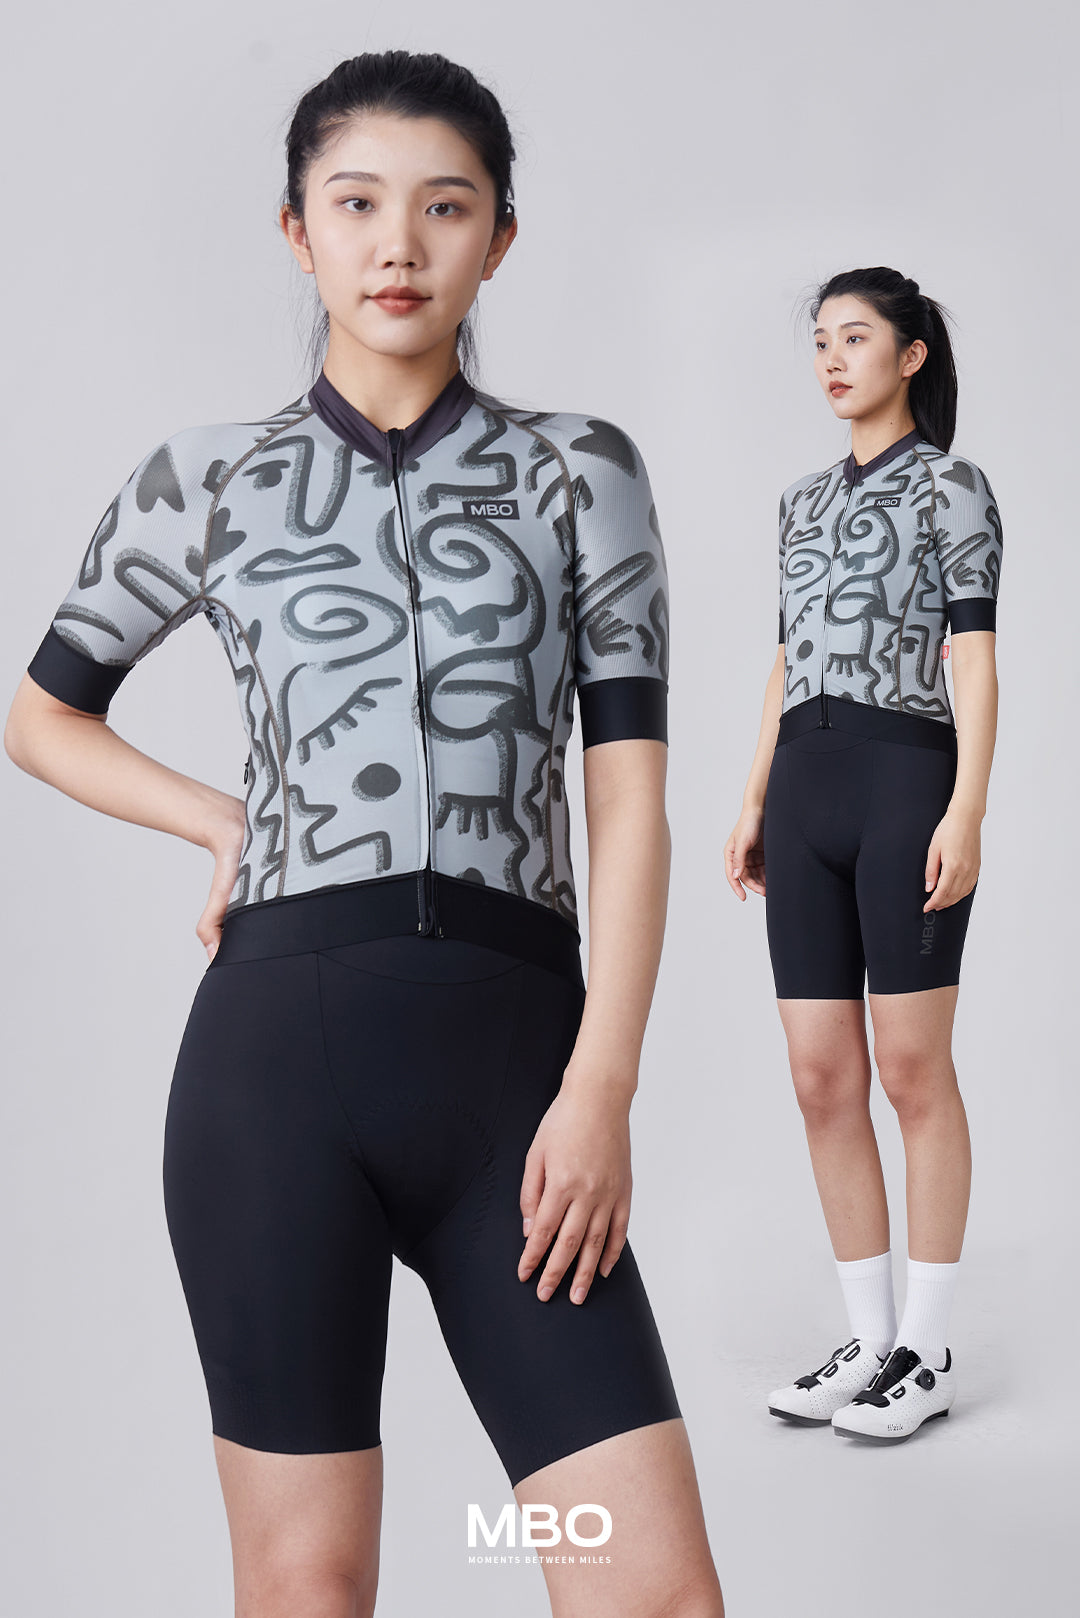 Women's Short Sleeve Jersey- Leopard Prime Jersey Grey